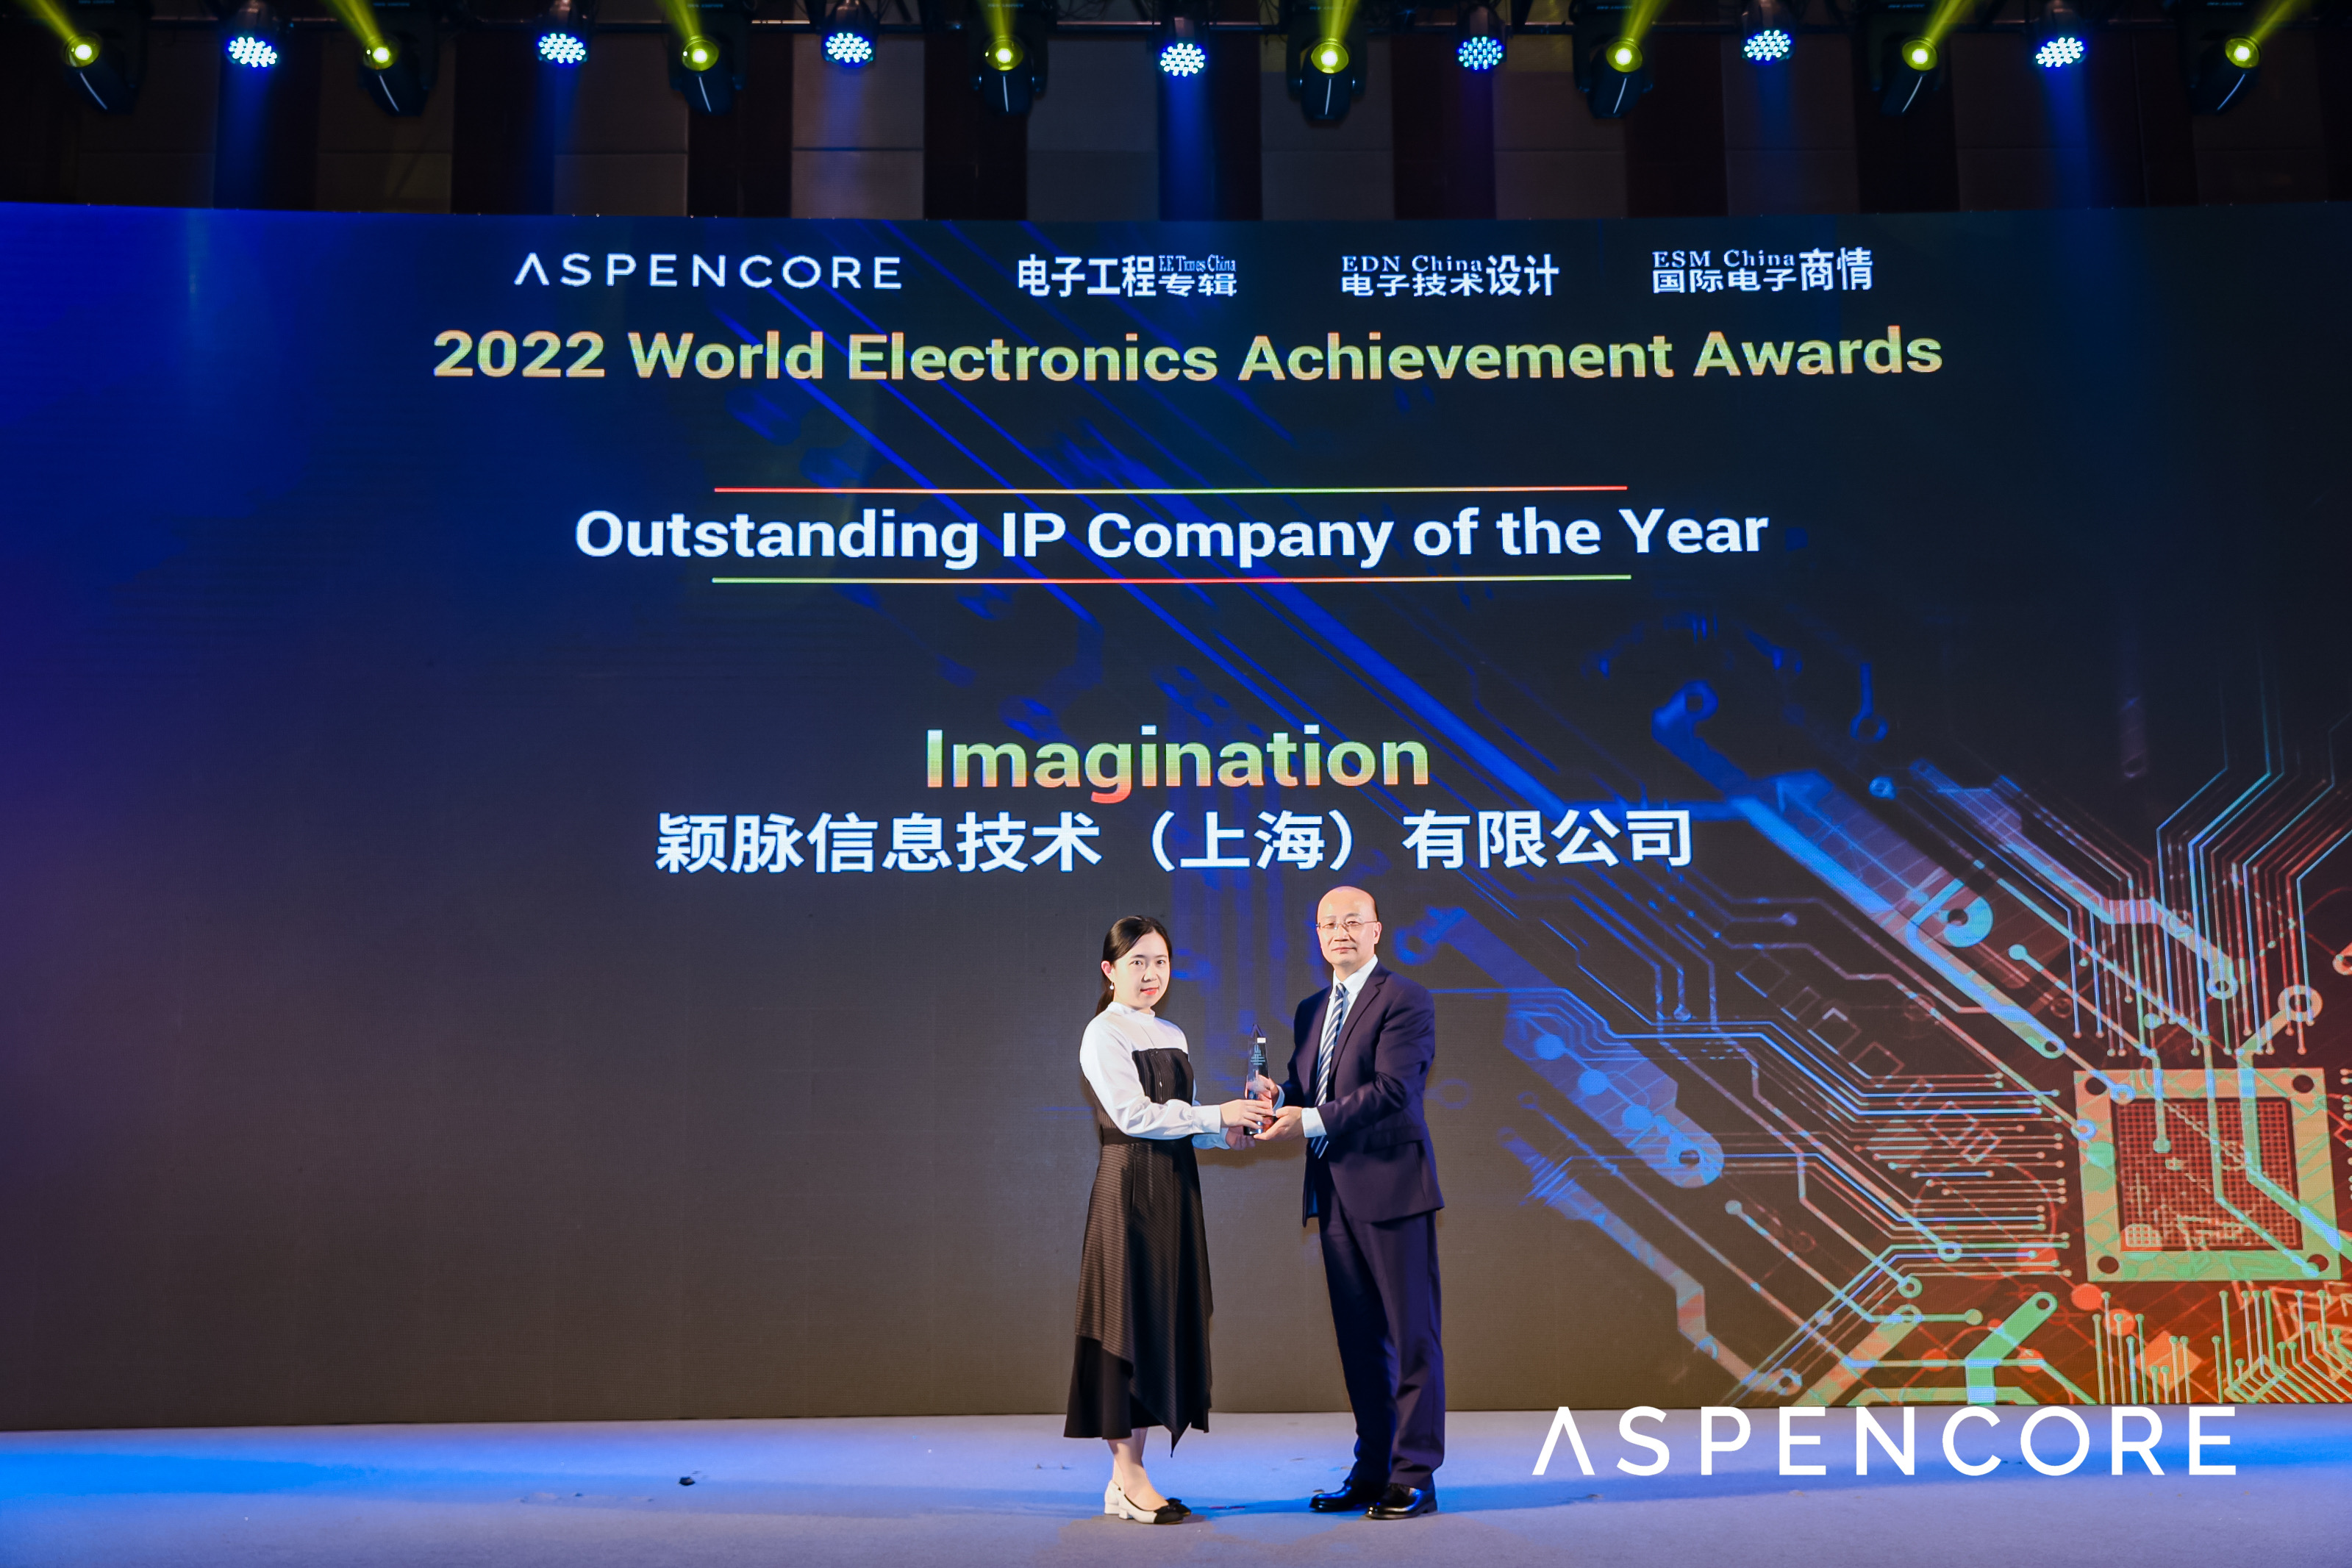 祝贺！Imagination荣获2022全球电子成就奖“年度创新IP公司”大奖